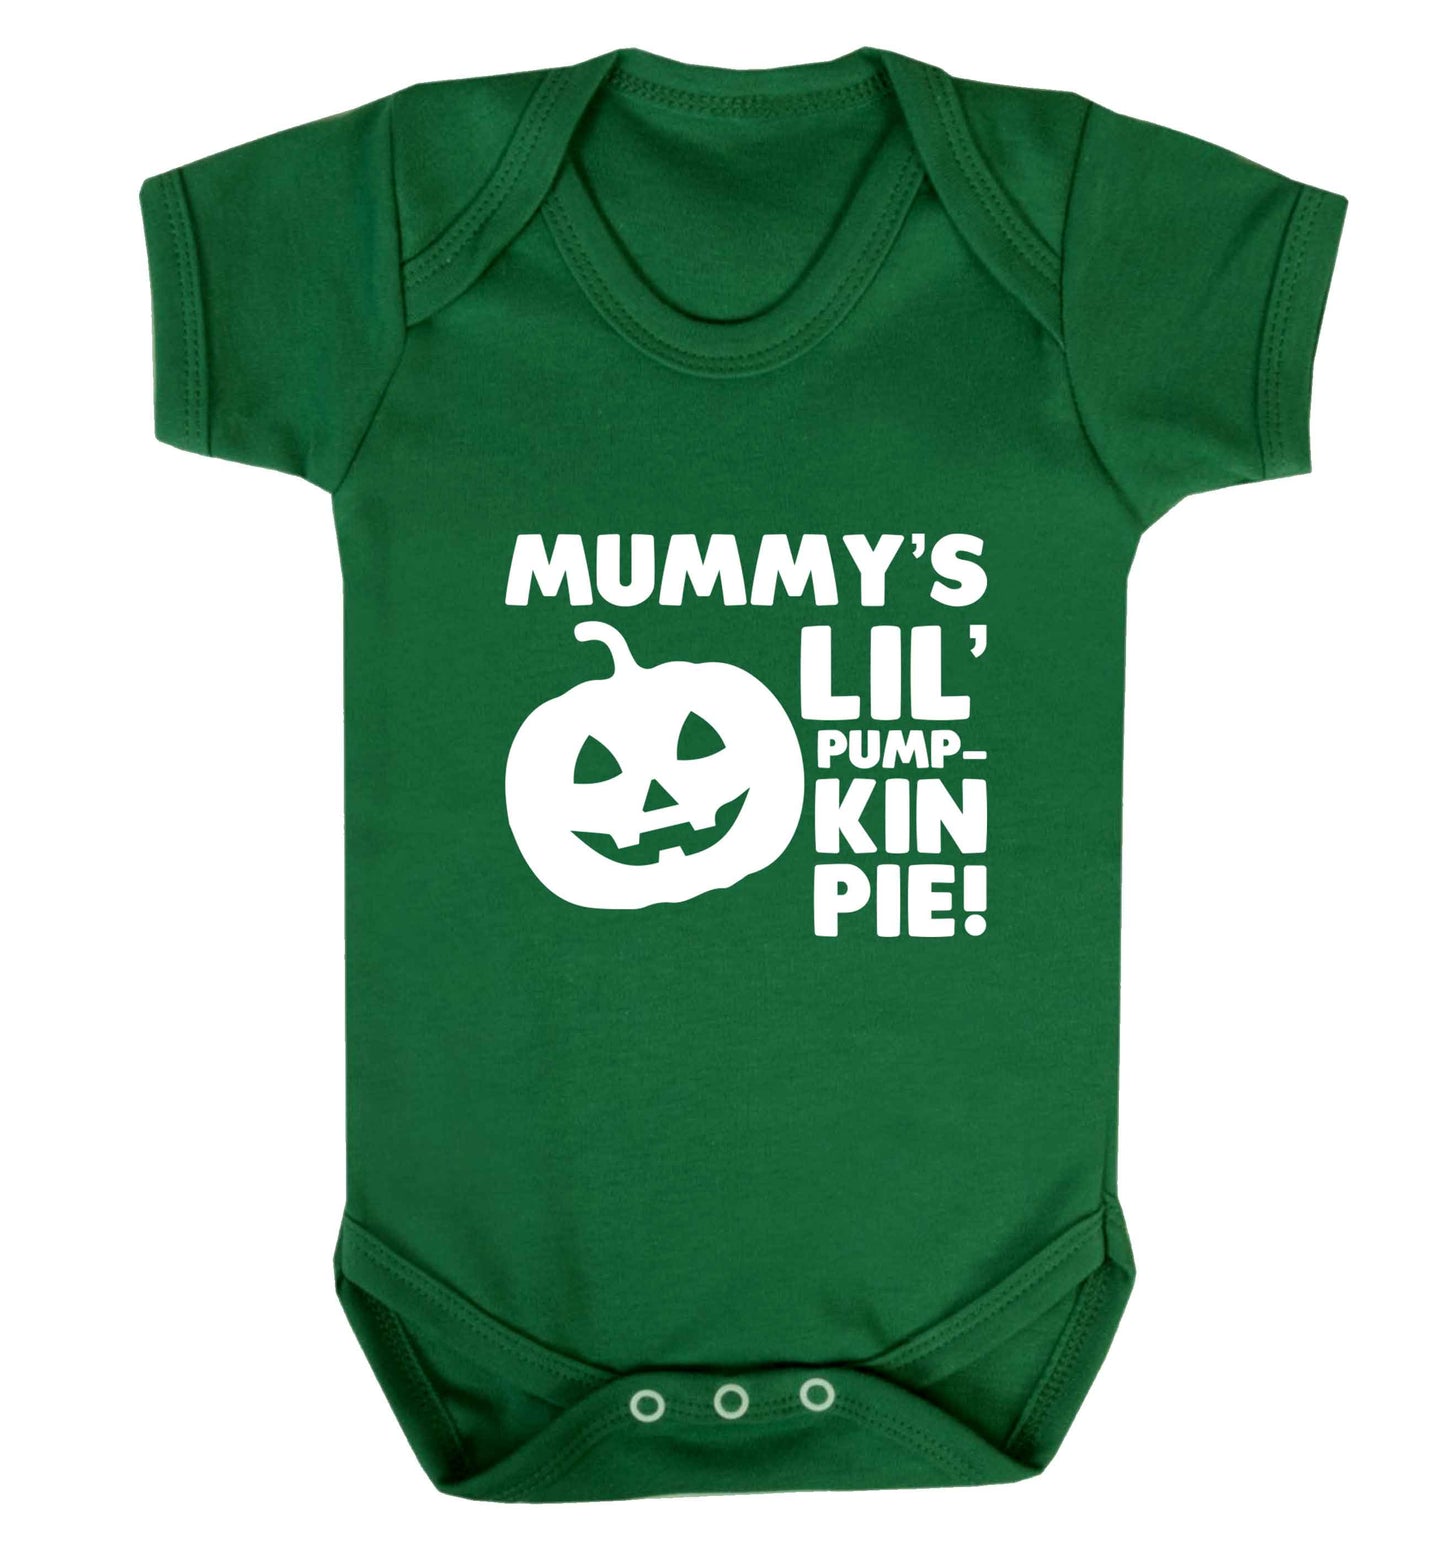 Mummy's lil' pumpkin pie baby vest green 18-24 months